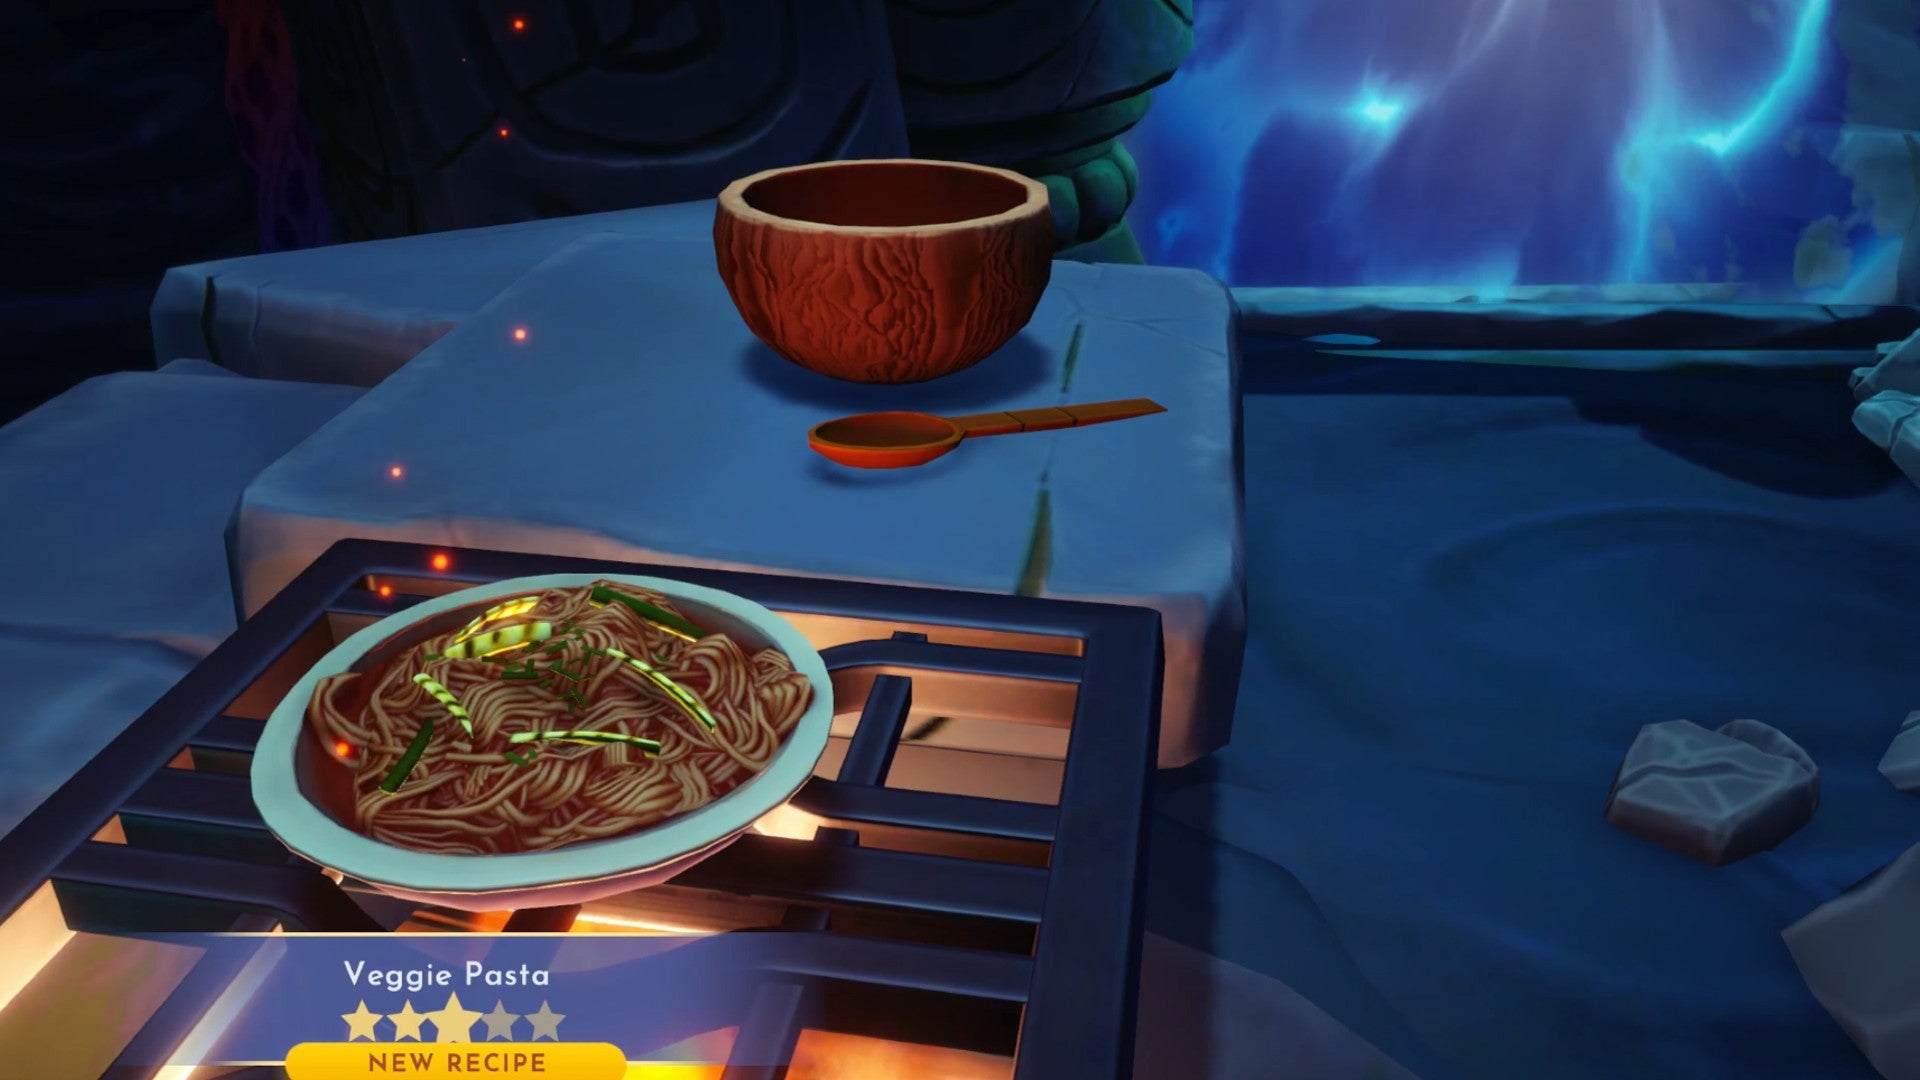 Captura de pantalla de Disney Dreamlight Valley que muestra una comida de pasta vegetariana cocinada, que está en la estufa de un horno en una cueva oscura.